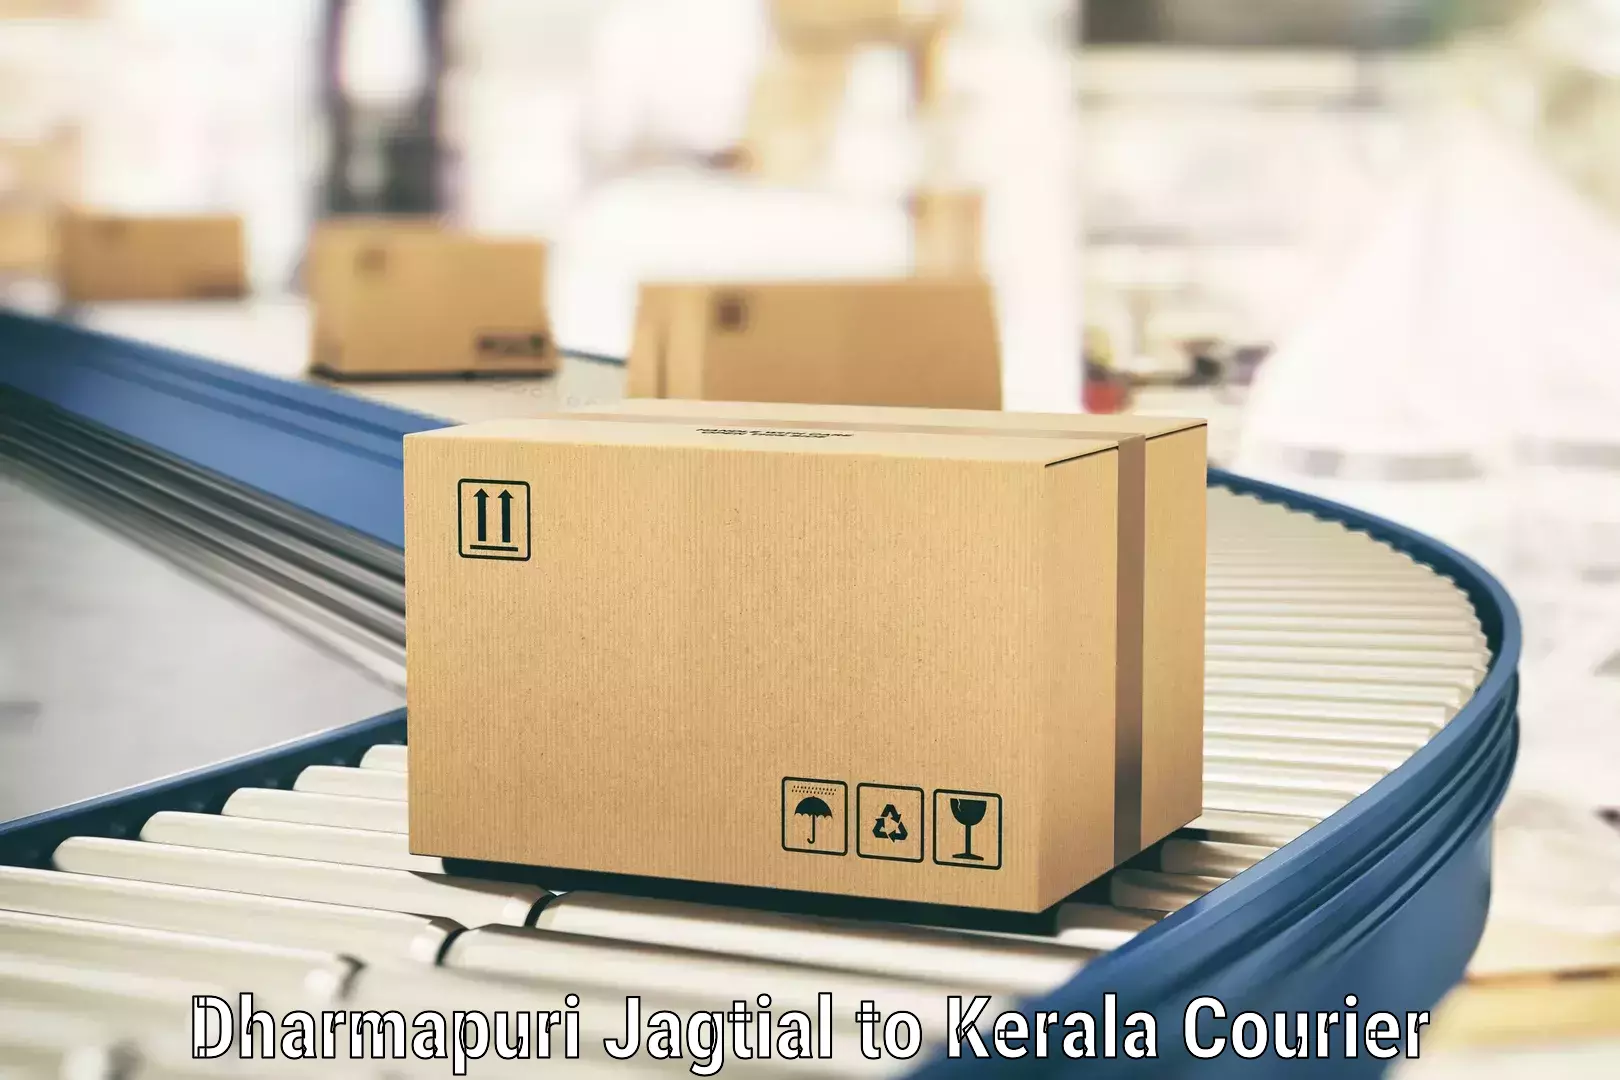 Large package courier Dharmapuri Jagtial to Palakkad